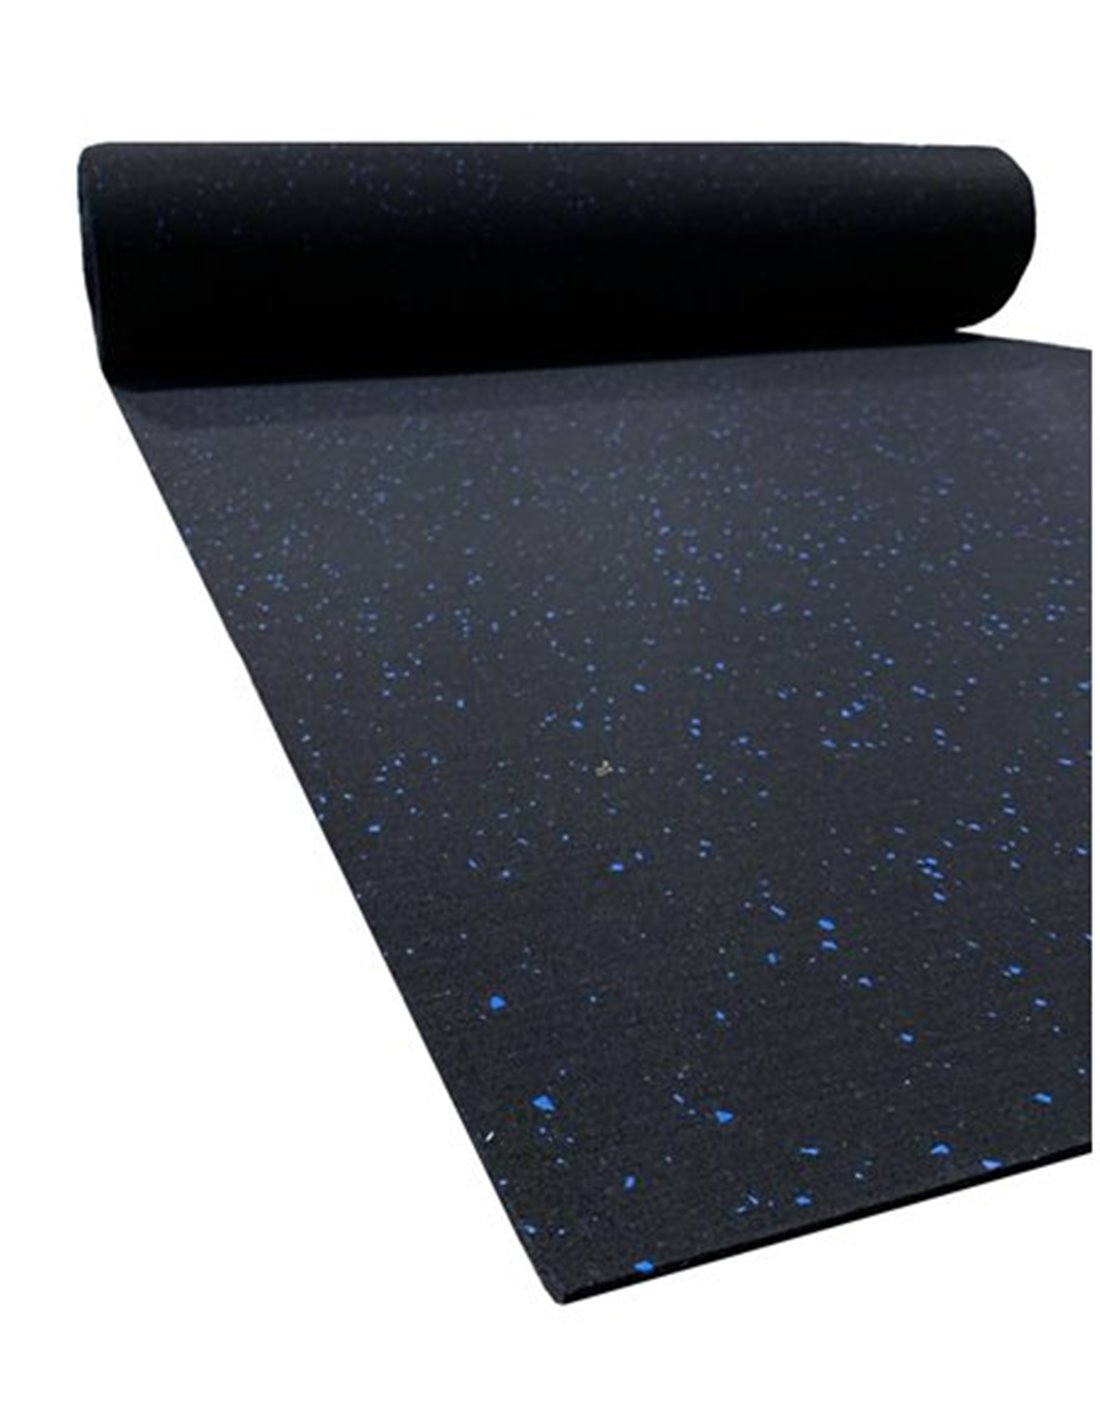 La foto del suelo de goma azul del gimnasio con la sombra de un